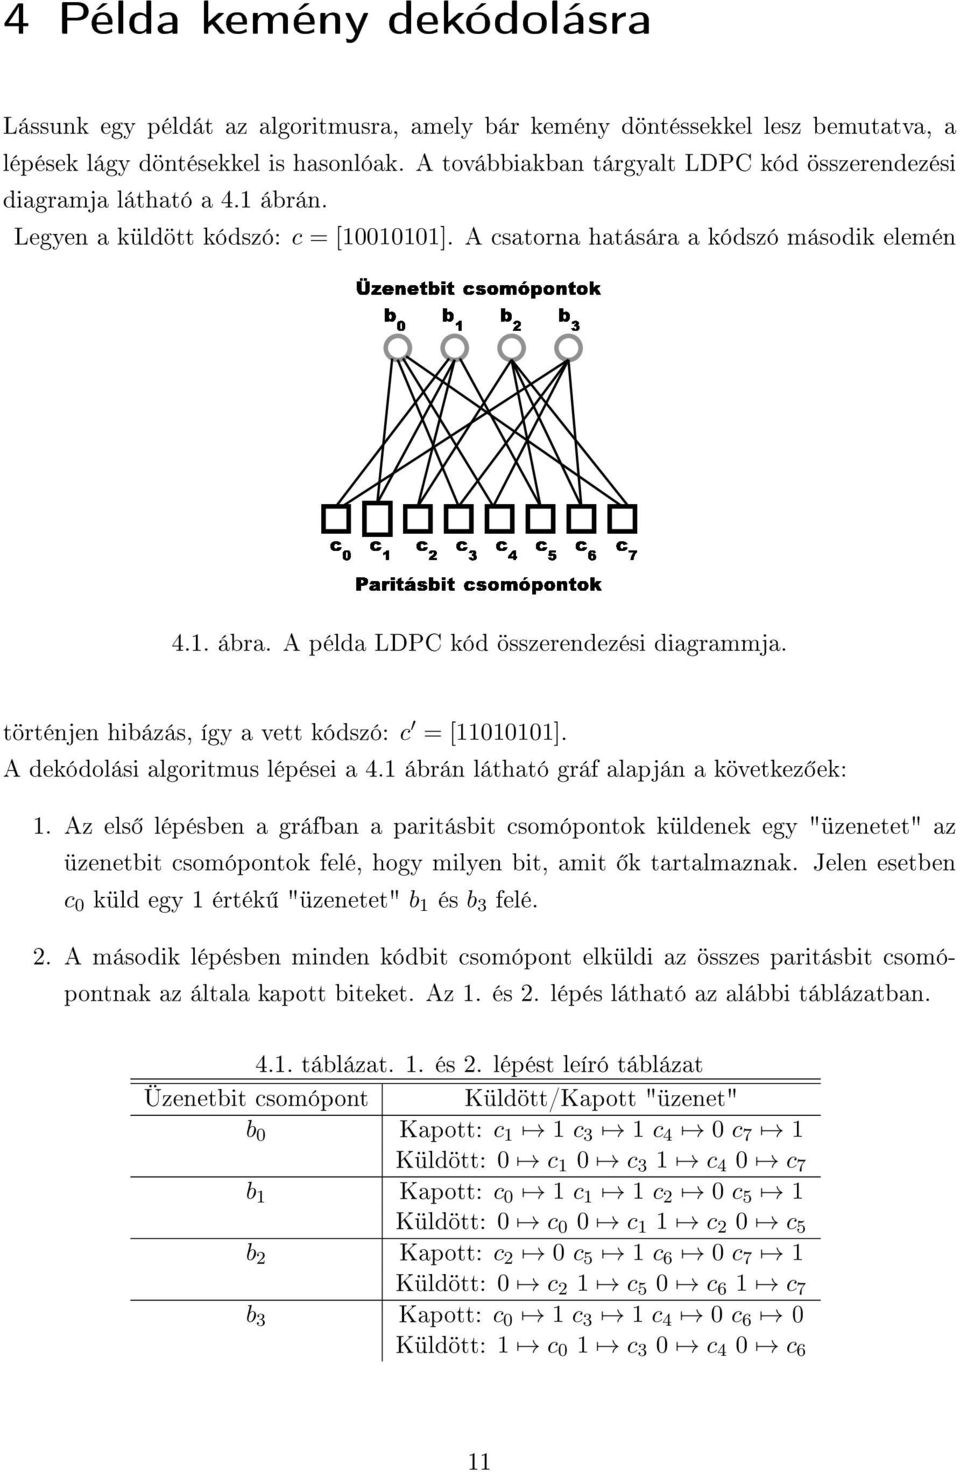 A példa LDPC kód összerendezési diagrammja. történjen hibázás, így a vett kódszó: c = [11010101]. A dekódolási algoritmus lépései a 4.1 ábrán látható gráf alapján a következ ek: 1.